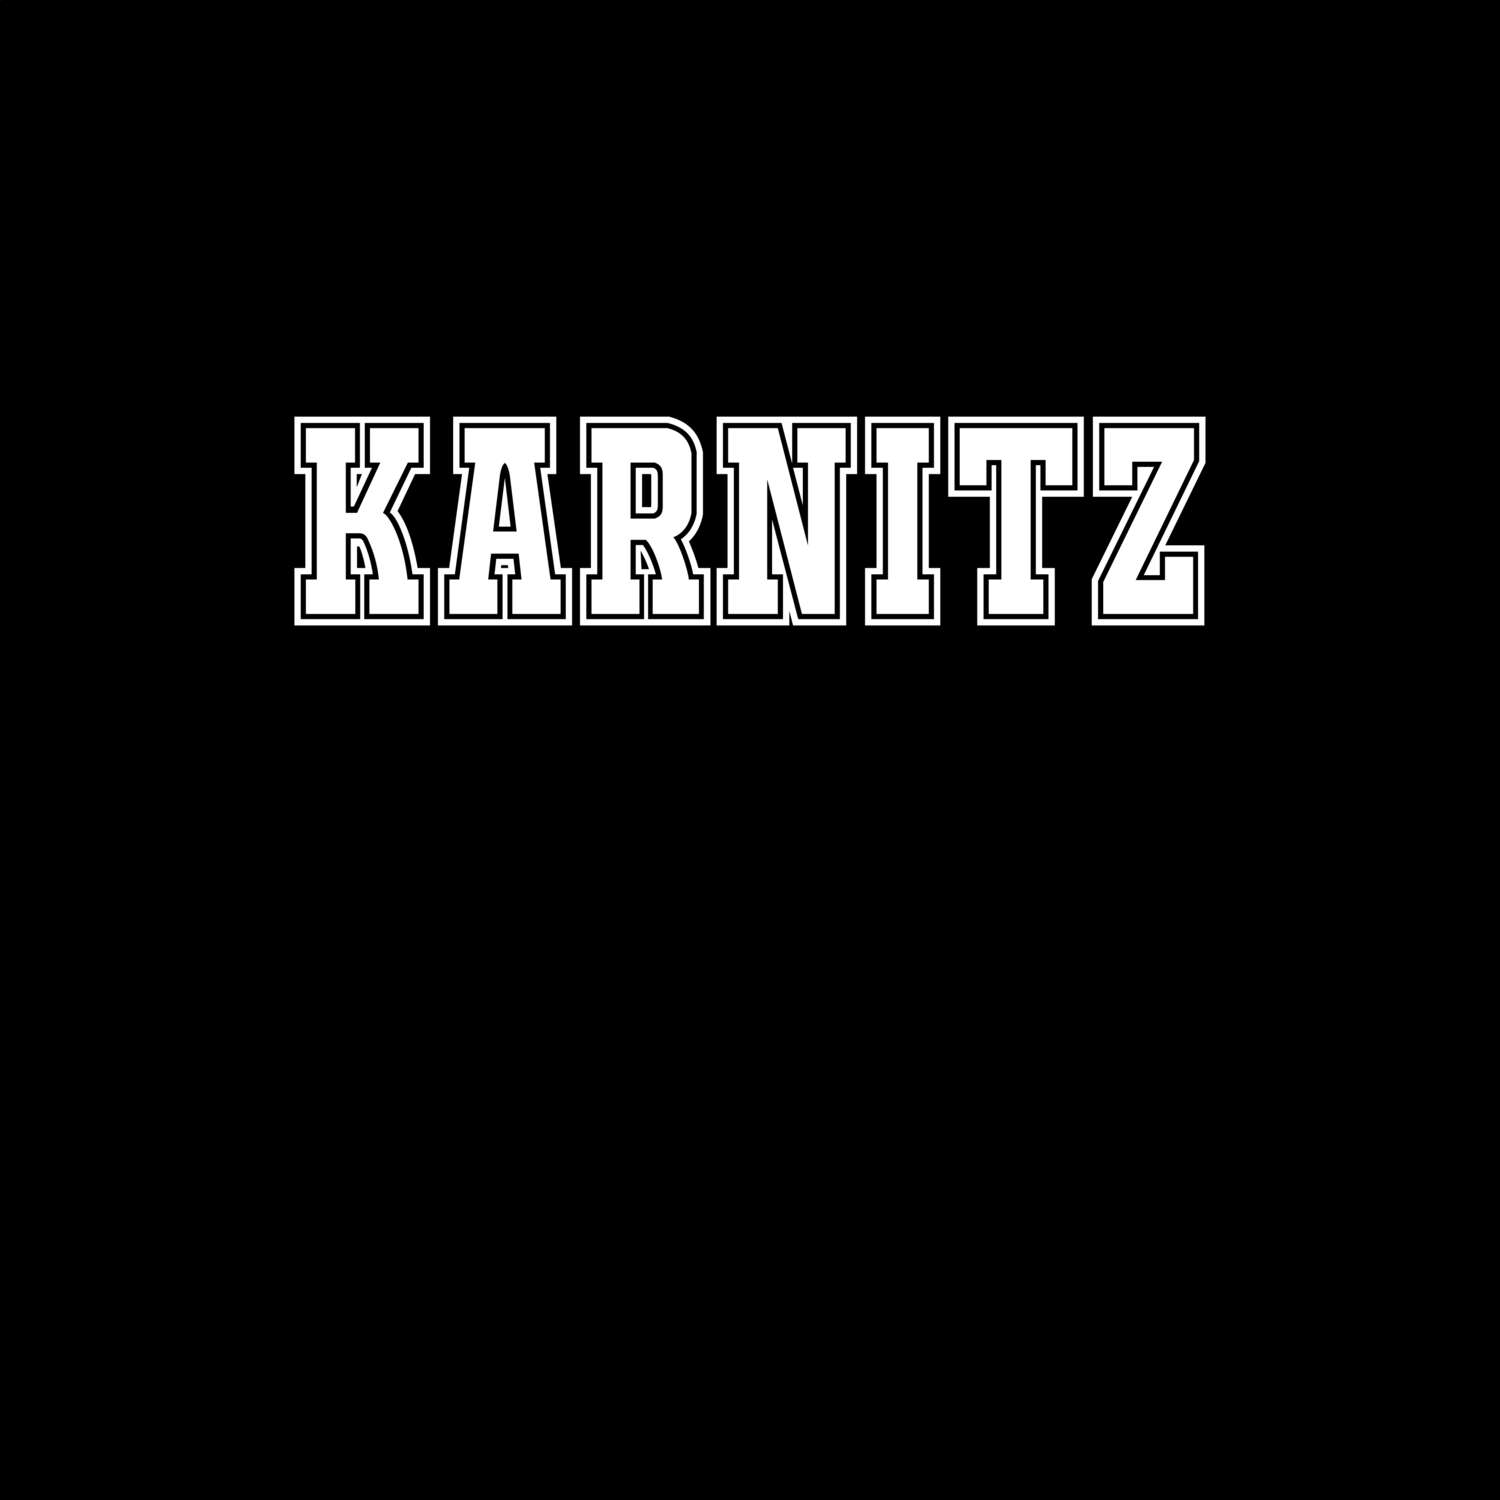 Karnitz T-Shirt »Classic«